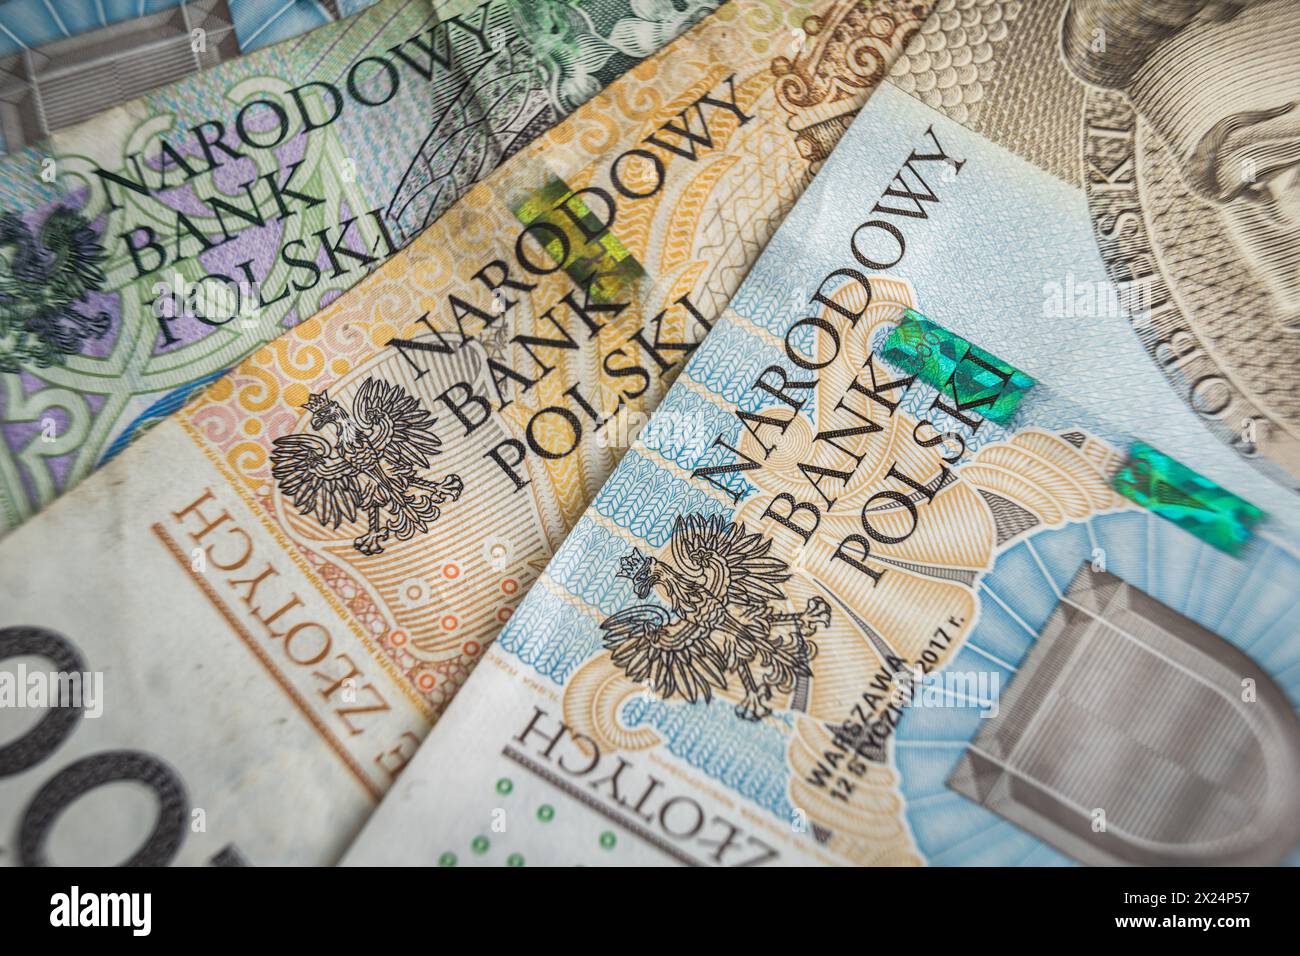 La banca Narodowy Polski firma sul concetto di inflazione Banknote Economy in Polonia Foto Stock